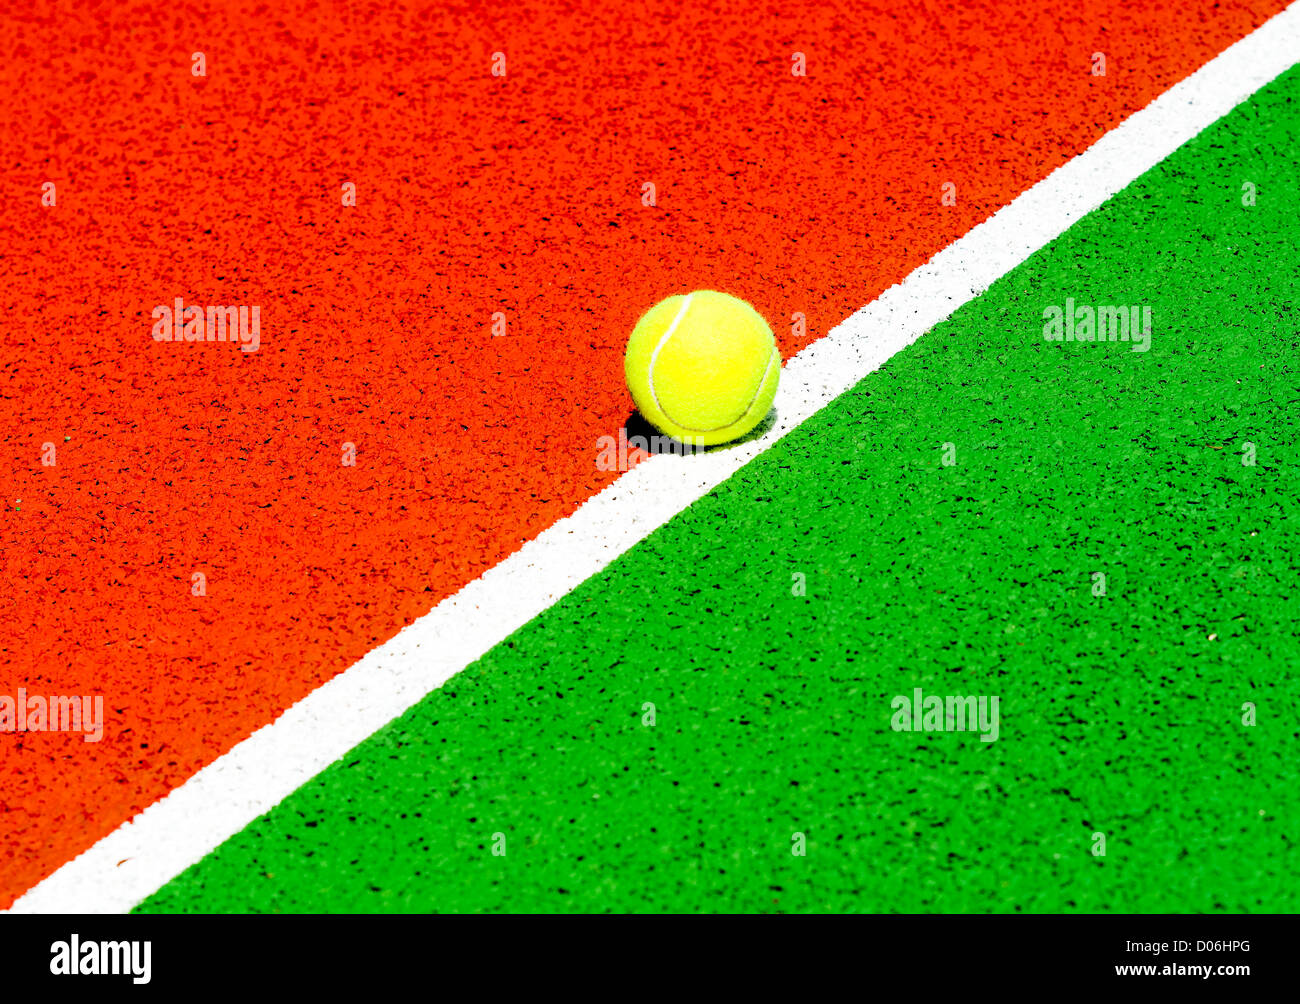 Balle de tennis sur un court de tennis Banque D'Images